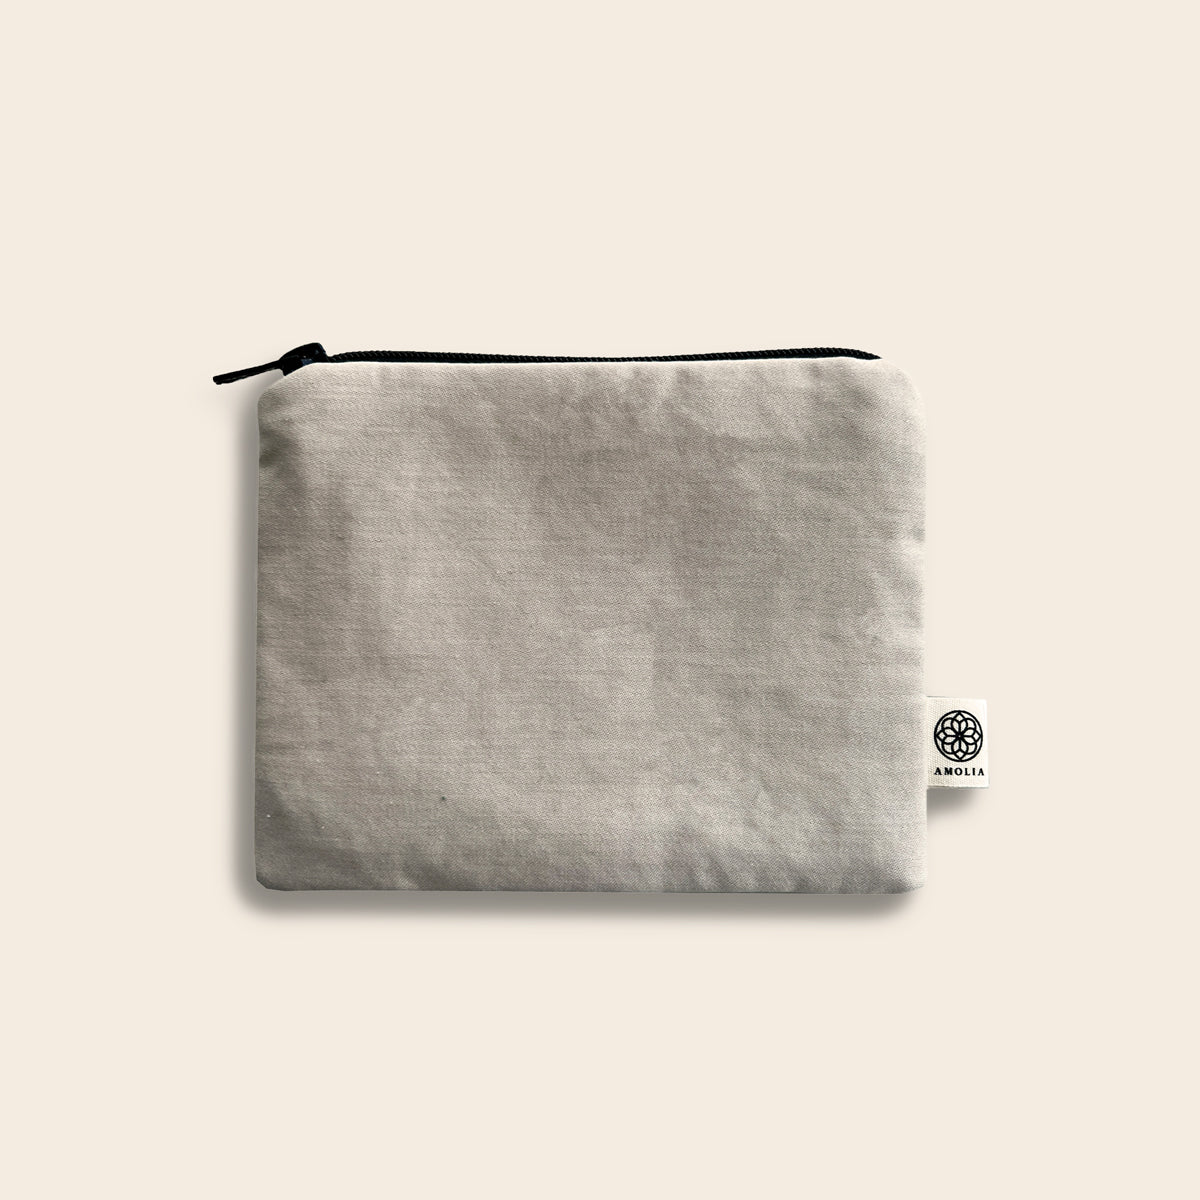 Upcycled bag, small, light brown